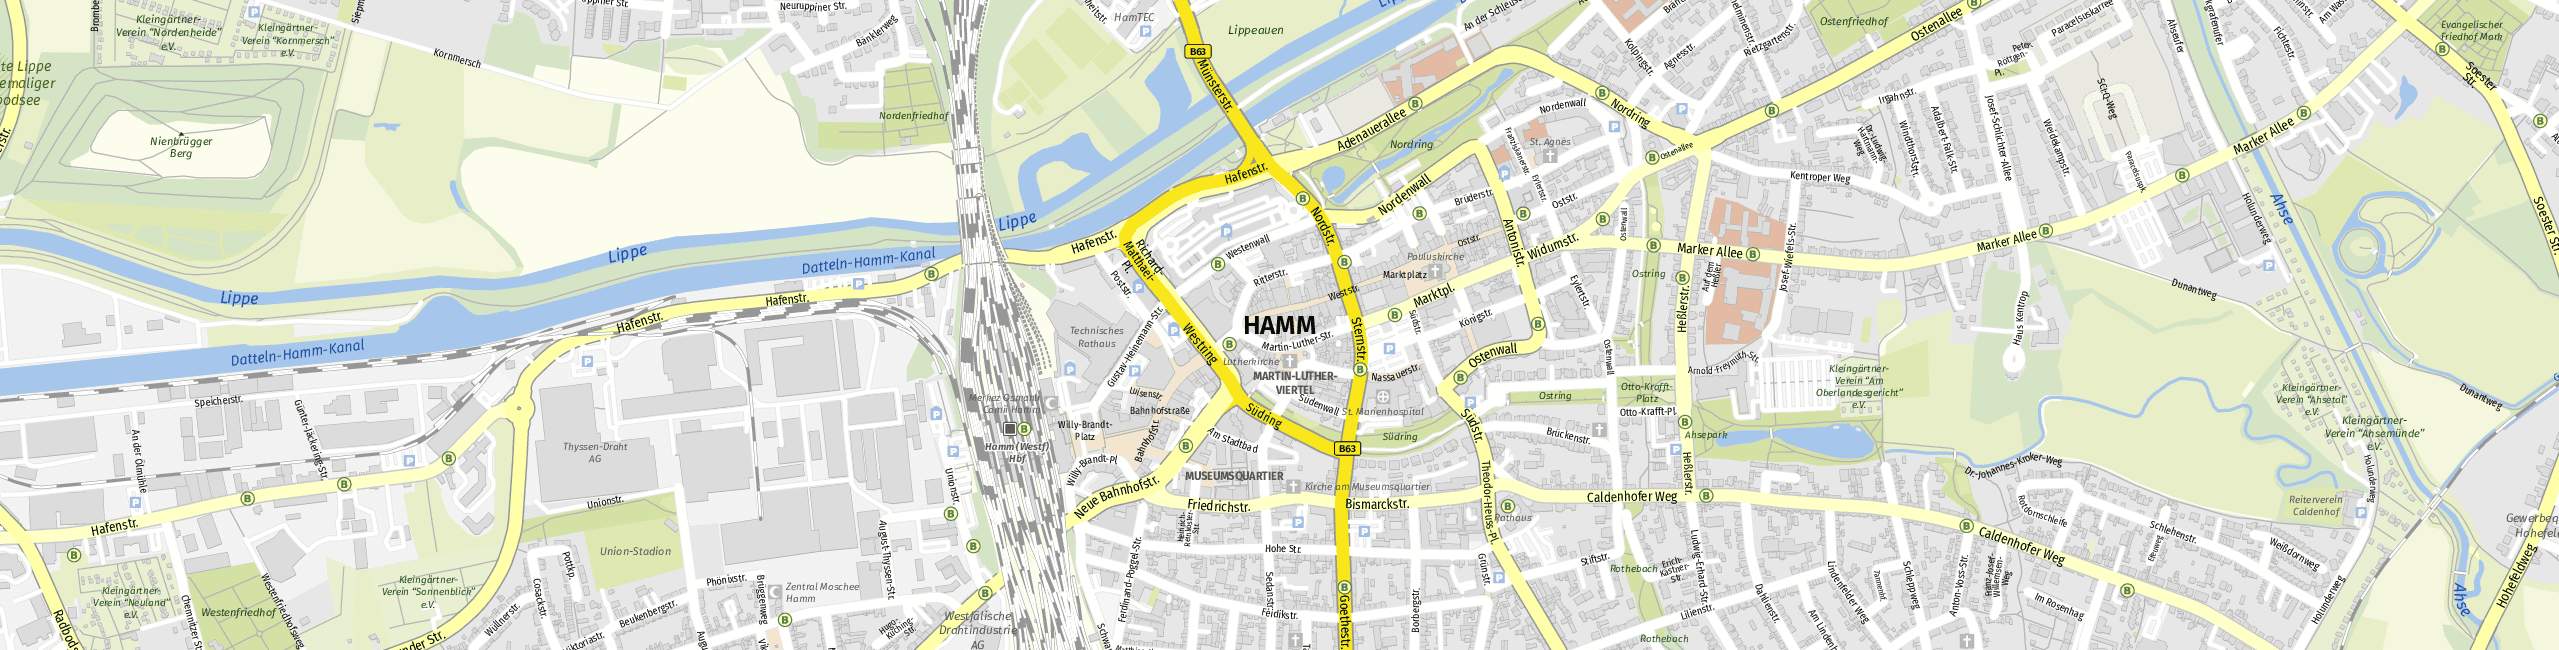 Stadtplan Hamm zum Downloaden.